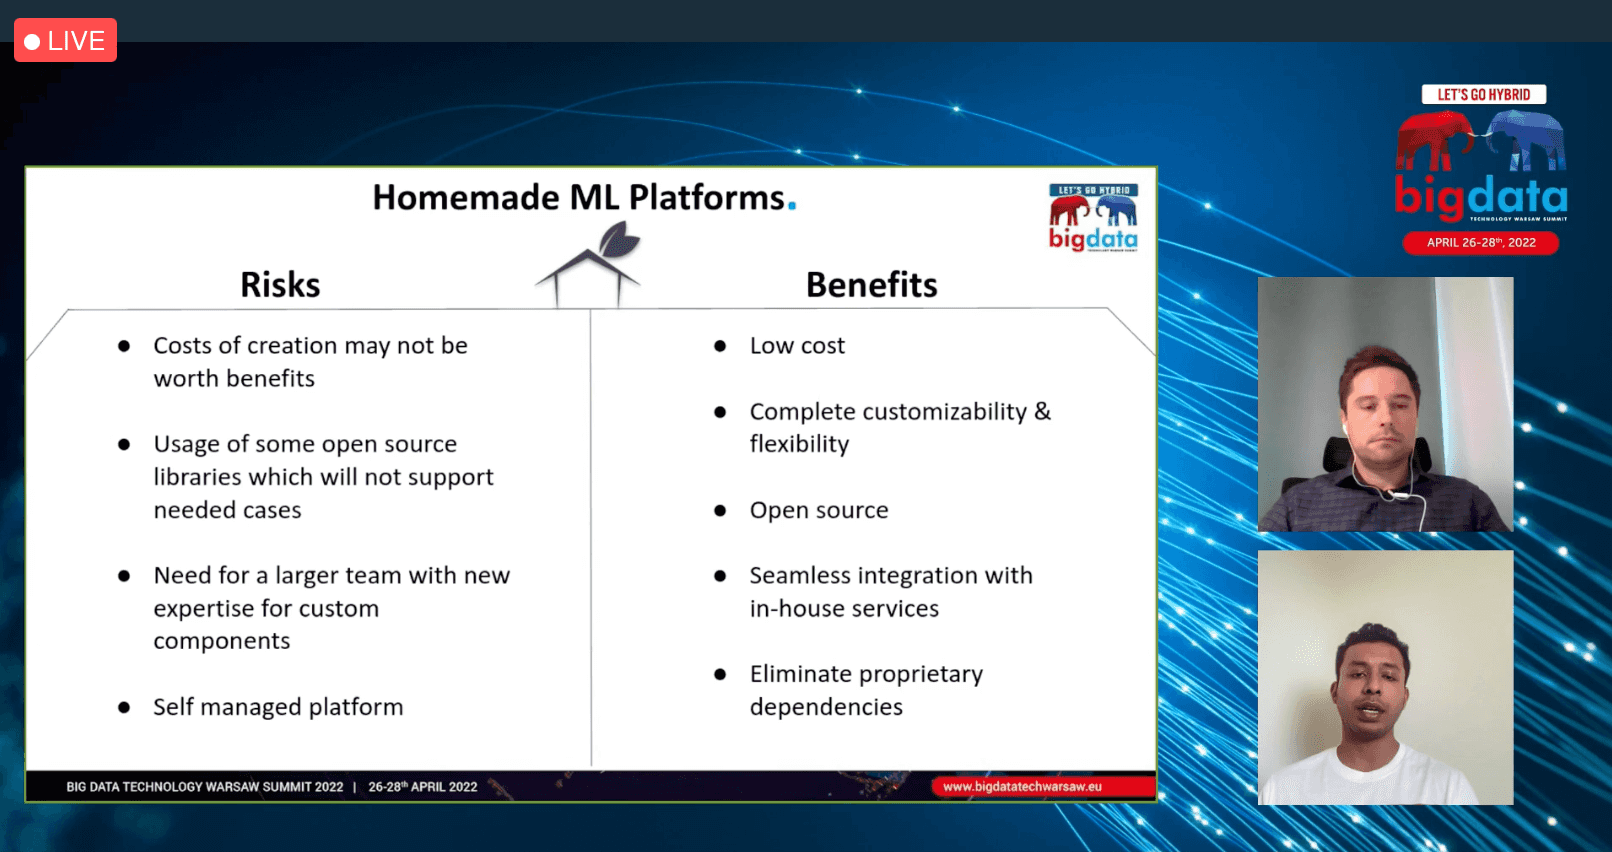 Benefits of a homemade ML Platform